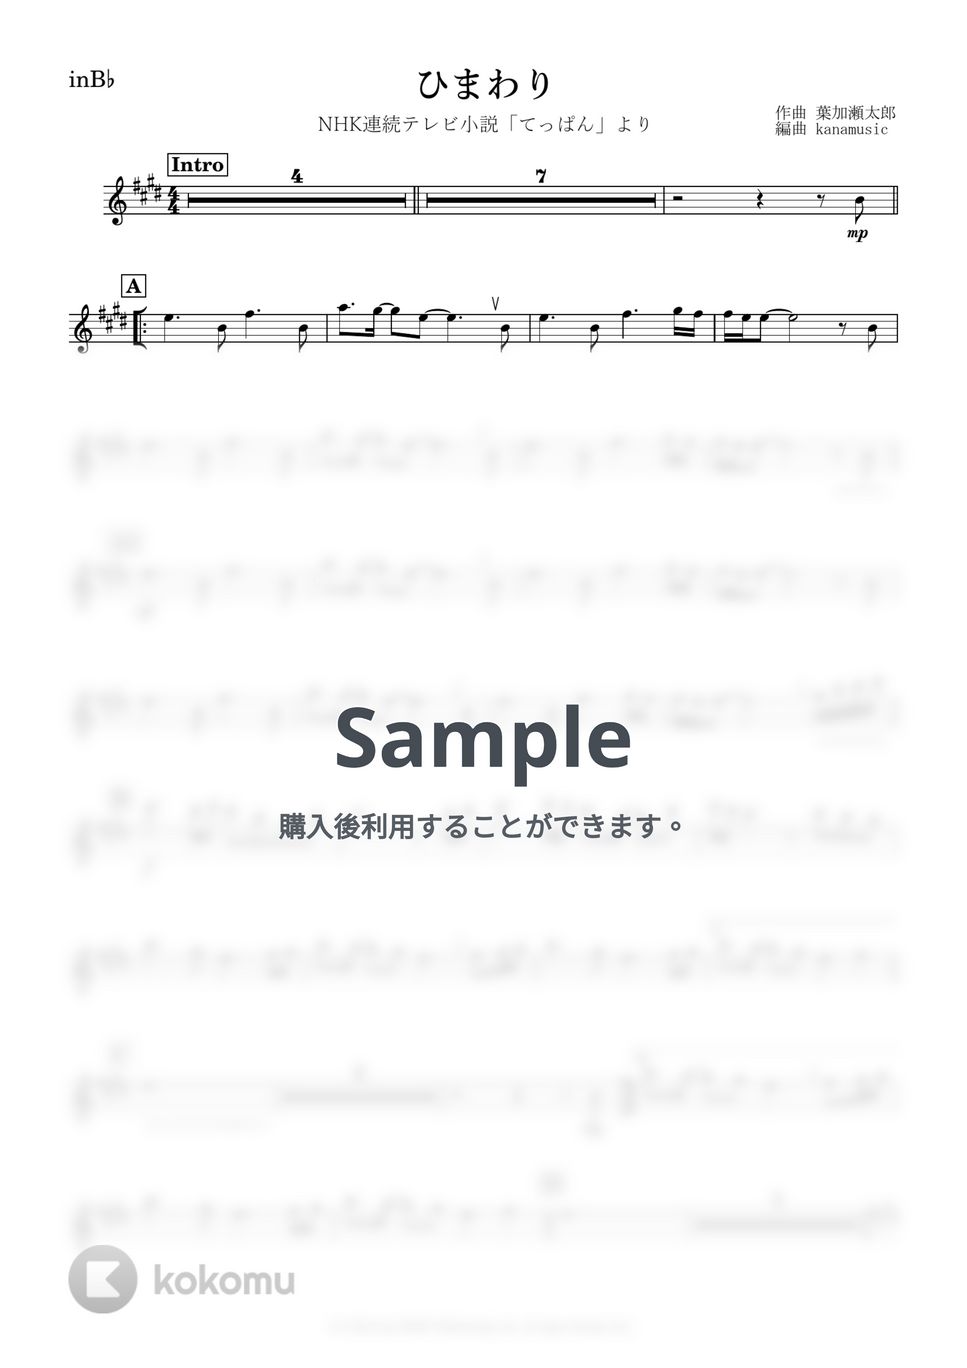 葉加瀬太郎 - ひまわり (B♭) by kanamusic